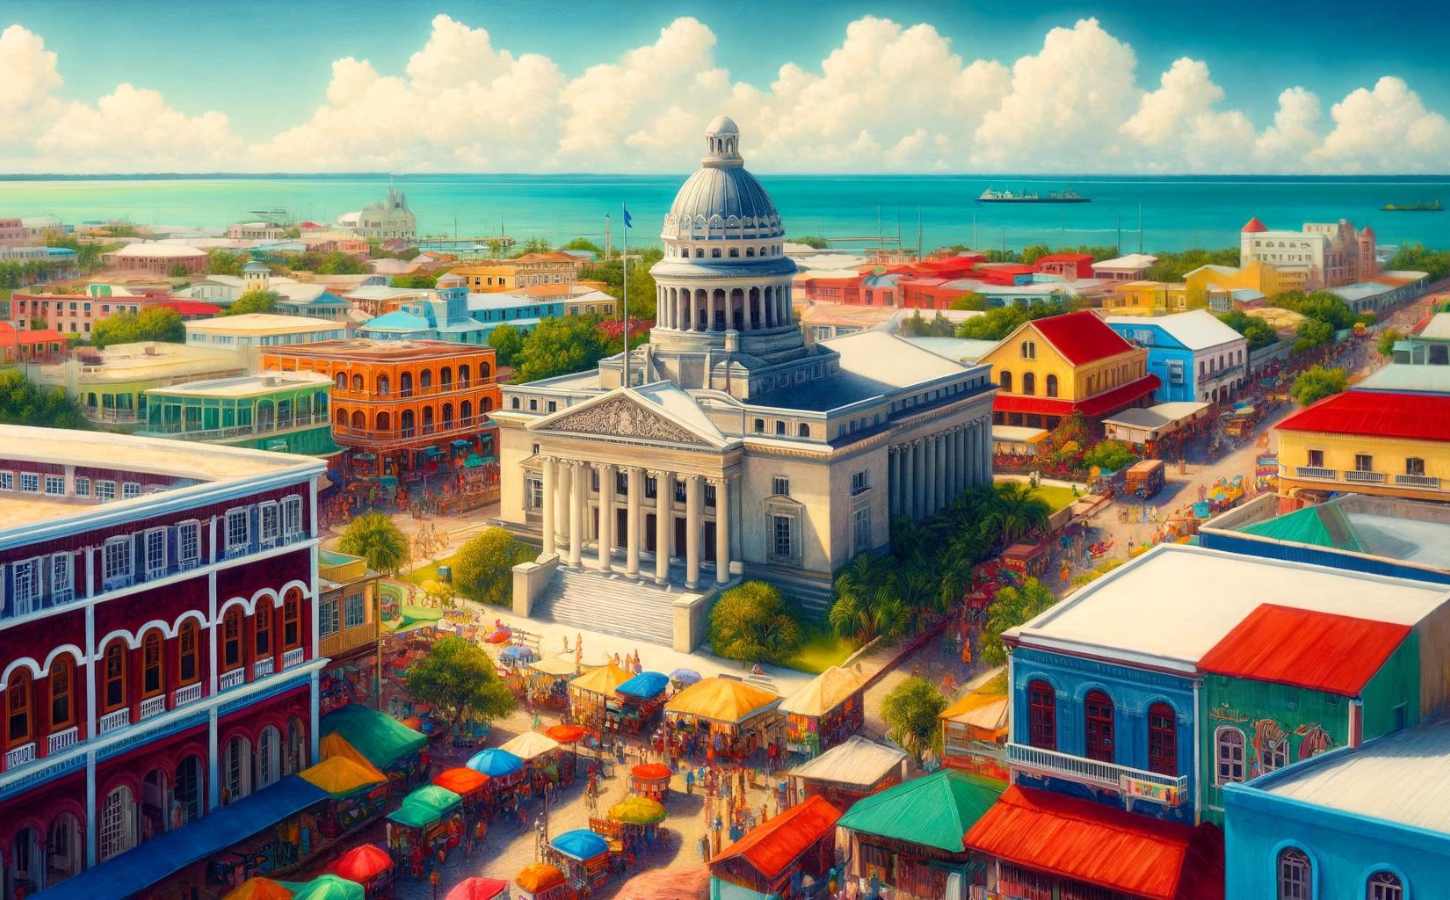 Belize is a Premier Destination for Offshore Businesses